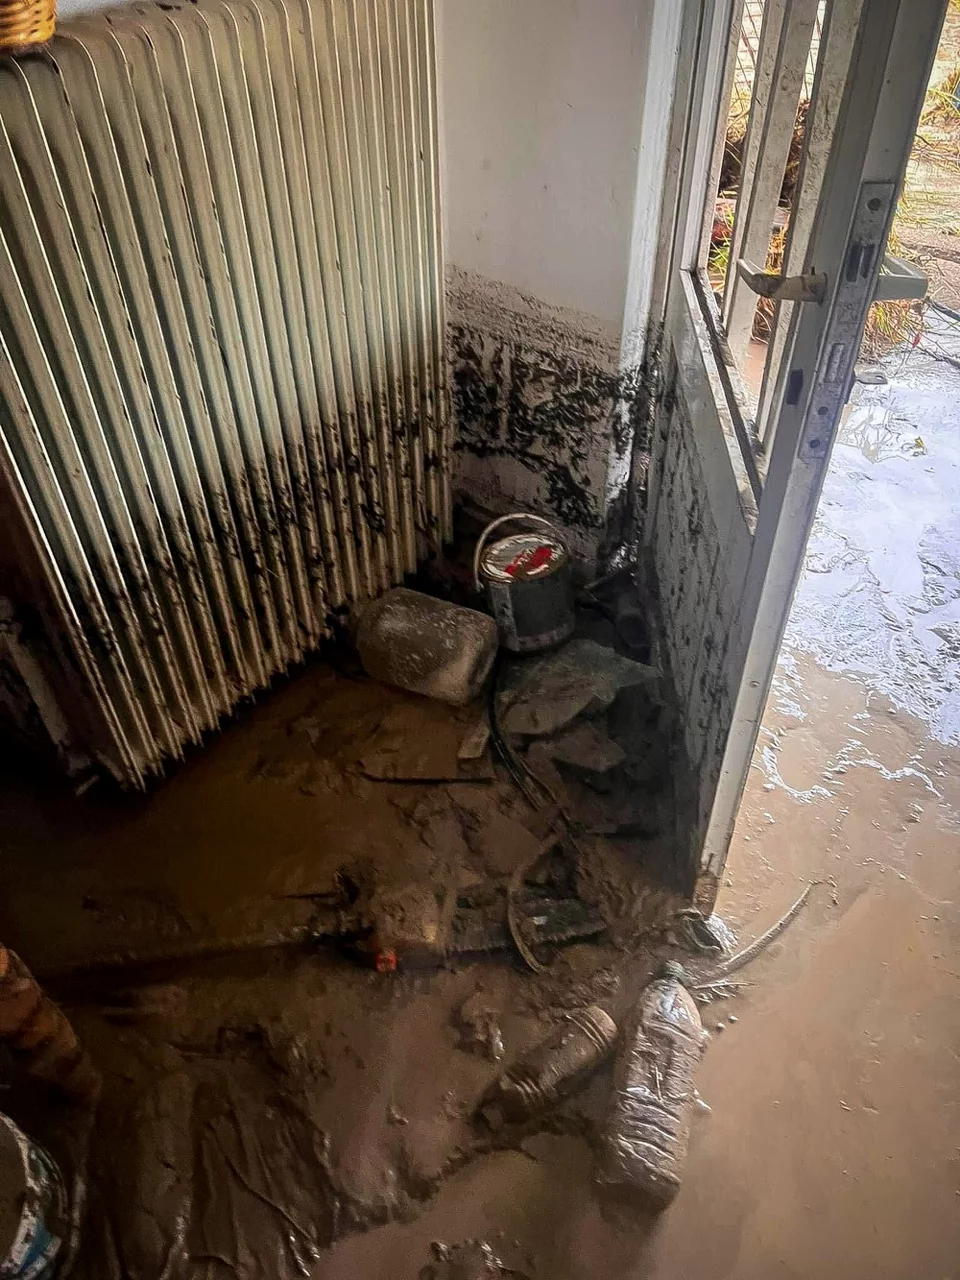 πλημμυρισμένο εσωτερικό σπιτιού στην Εύβοια